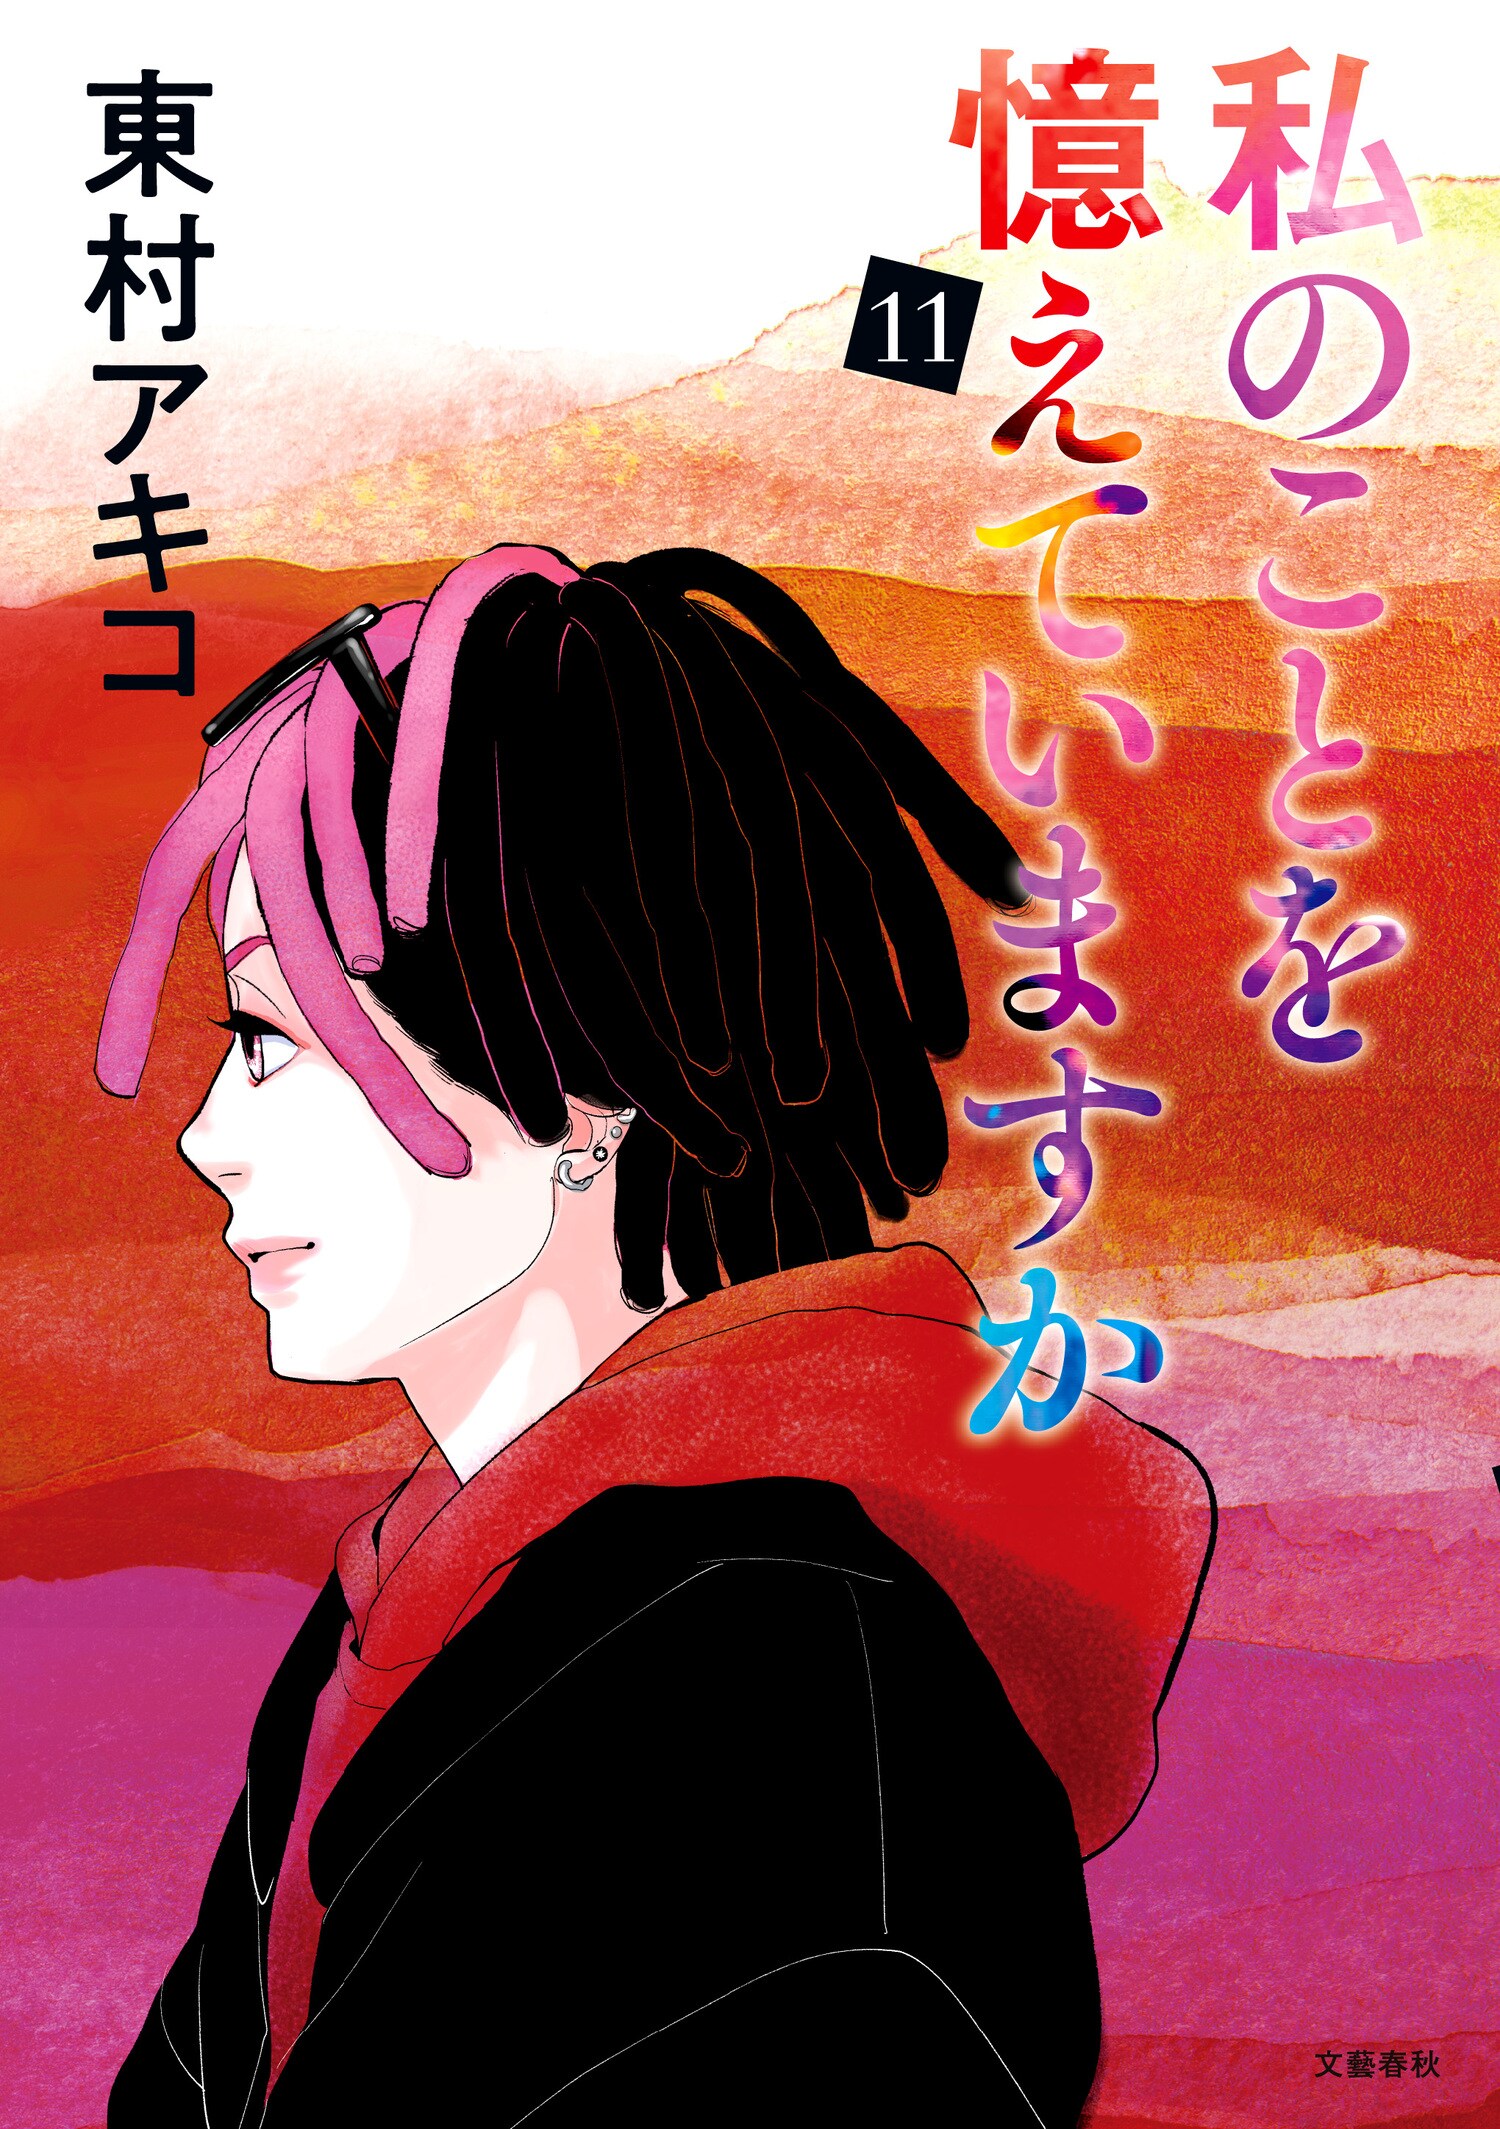 「諦め」と「譲れない思い」が交錯する、幼なじみ純愛コミック最新第11巻！ 東村アキコ『私のことを憶えていますか 11』